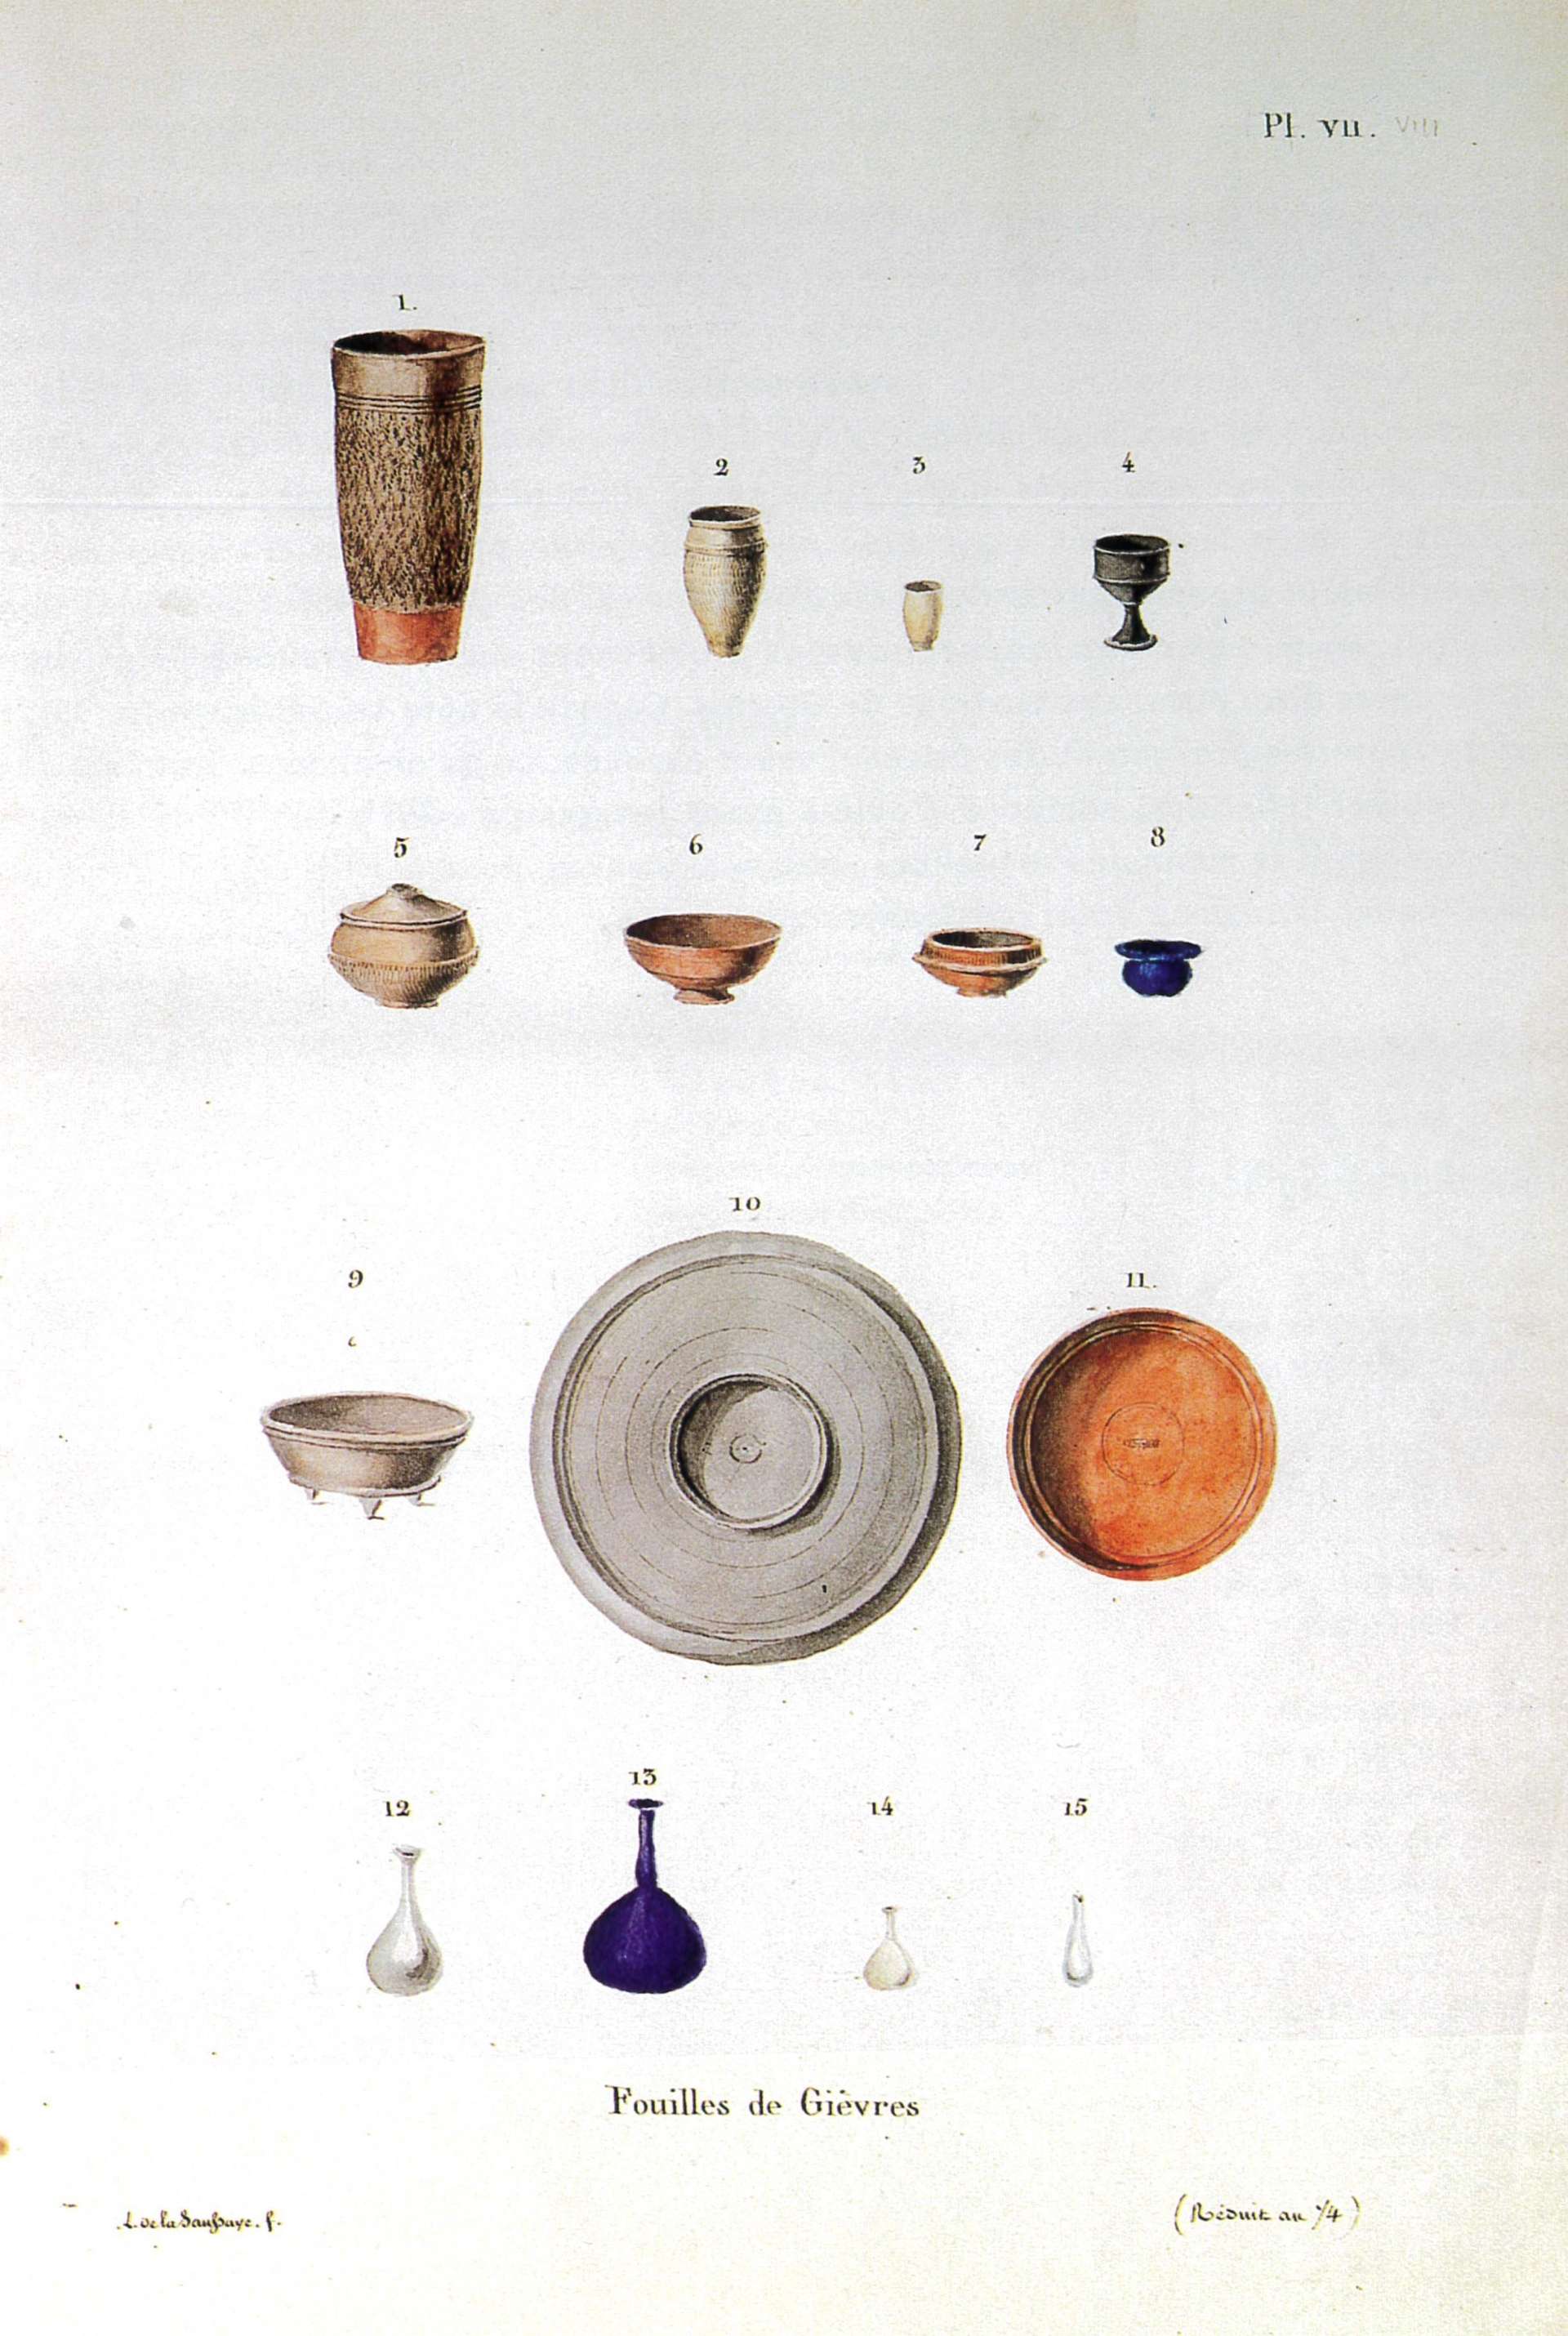 Louis de la Saussaye, Mémoires sur les antiquités de la Sologne blésoise, pl. VII, 1844